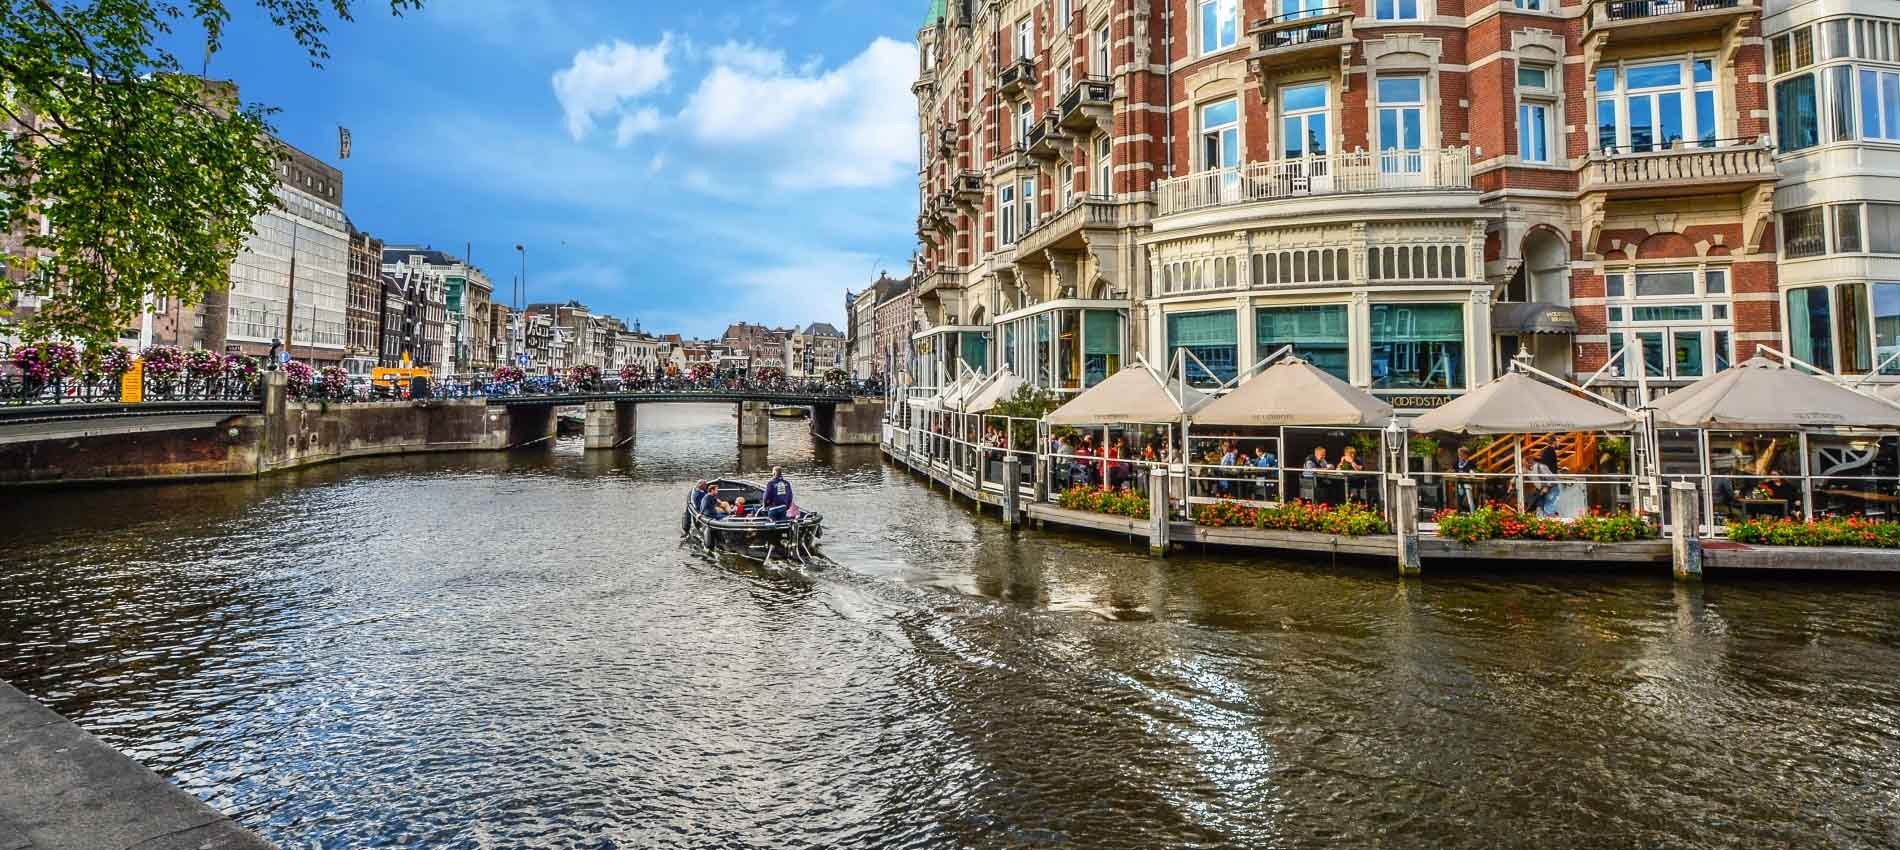 Услуги трансфера в Амстердаме